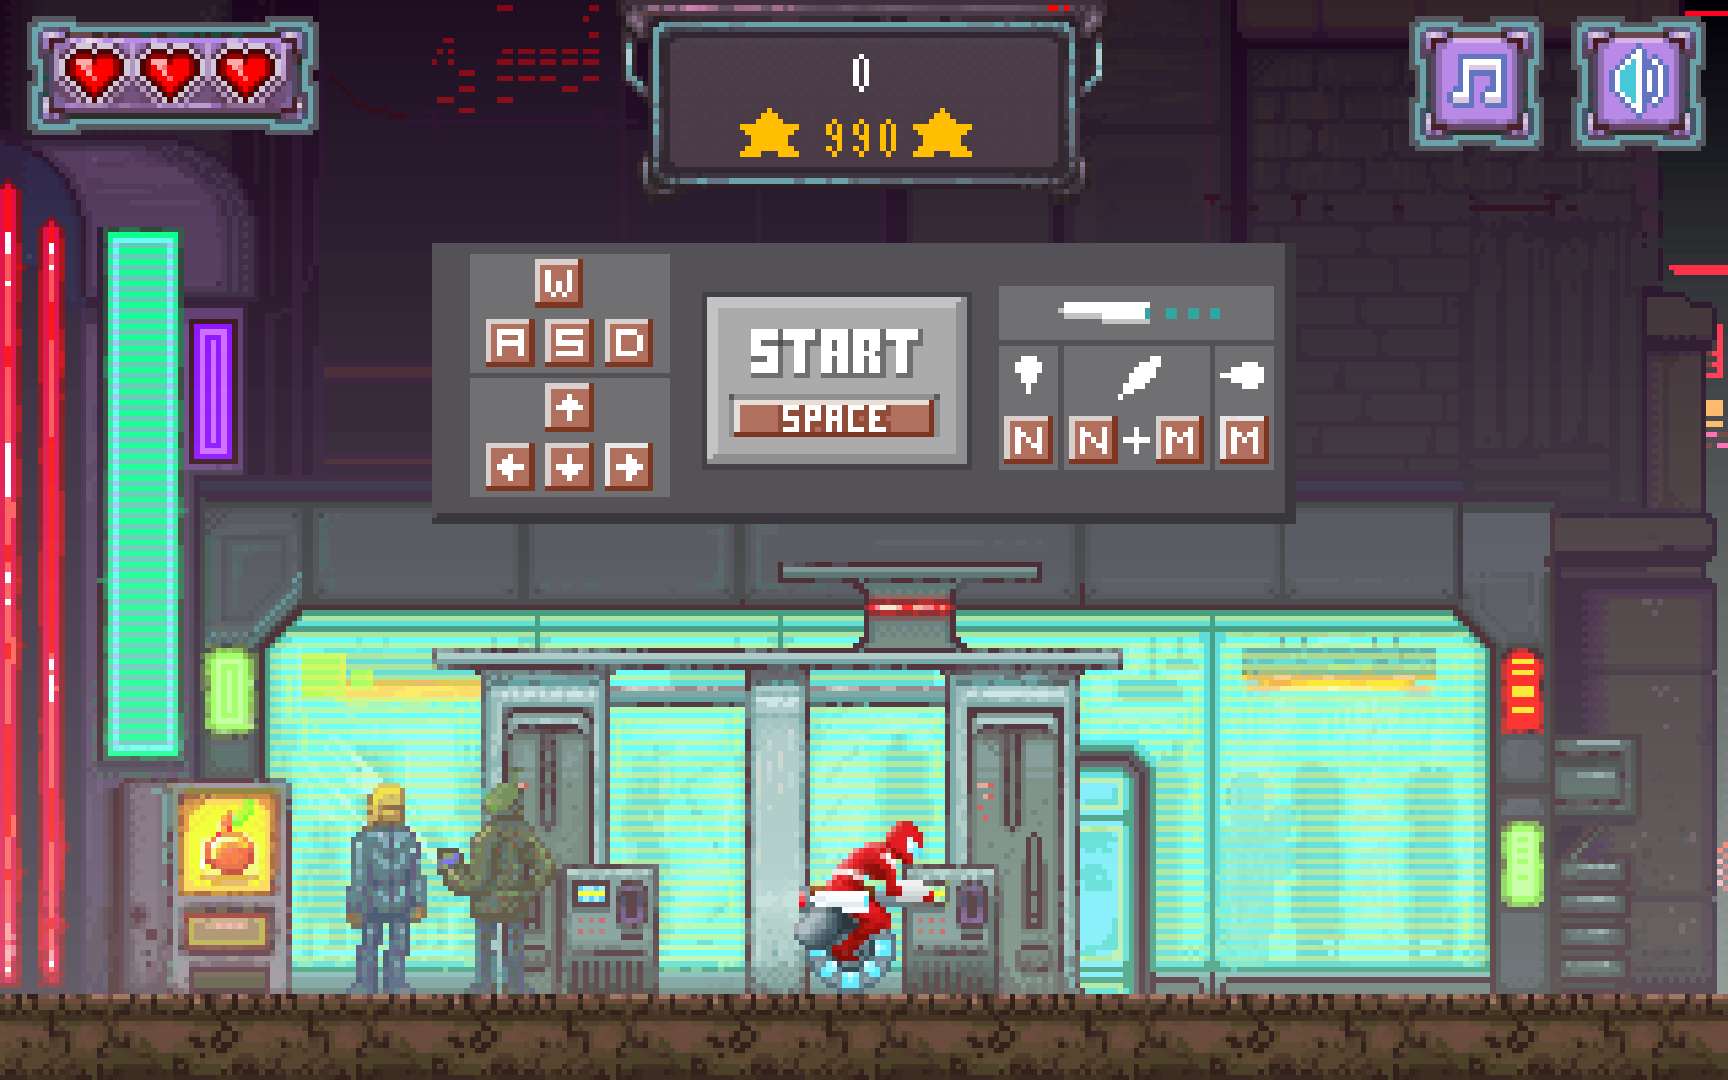 Captura de pantalla de la pantalla de inicio del juego